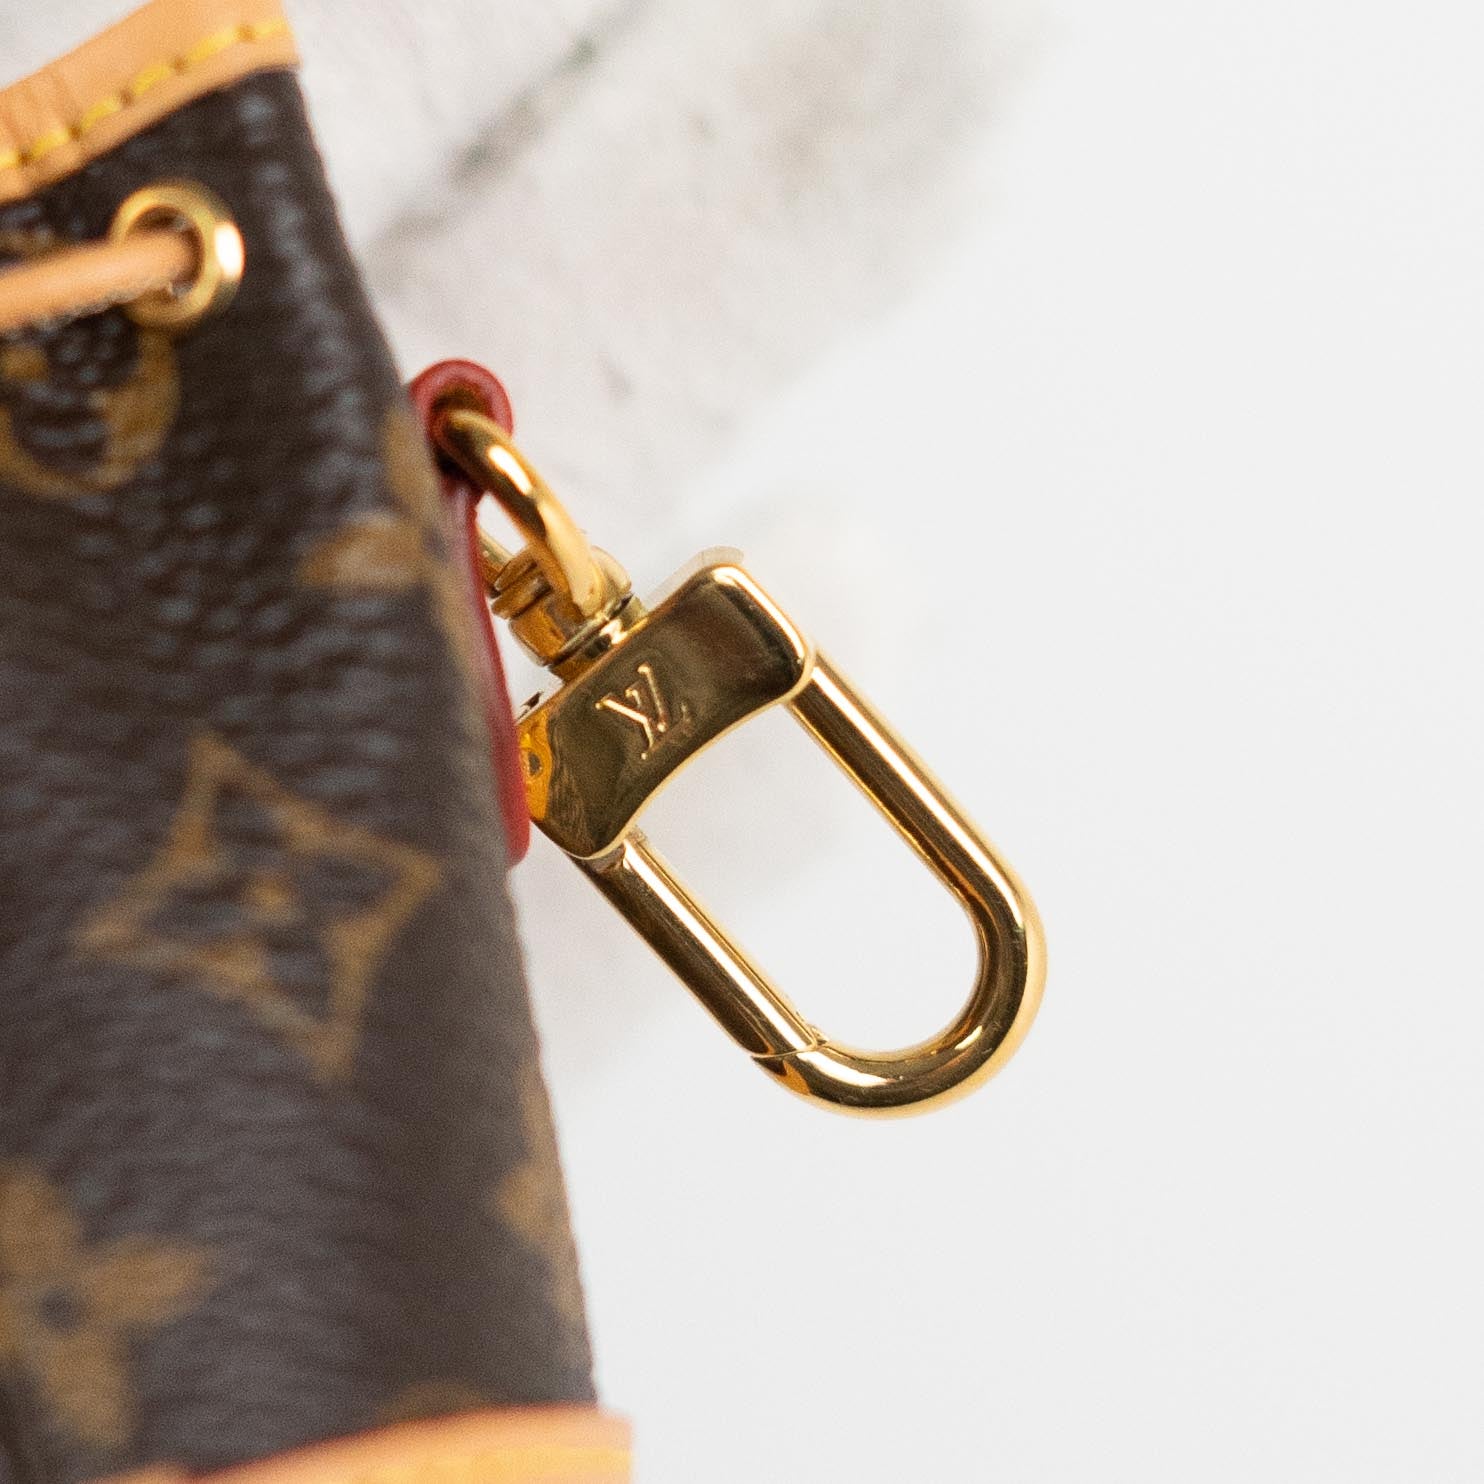 Louis Vuitton Monogram Leather Micro Noé Bag Charm